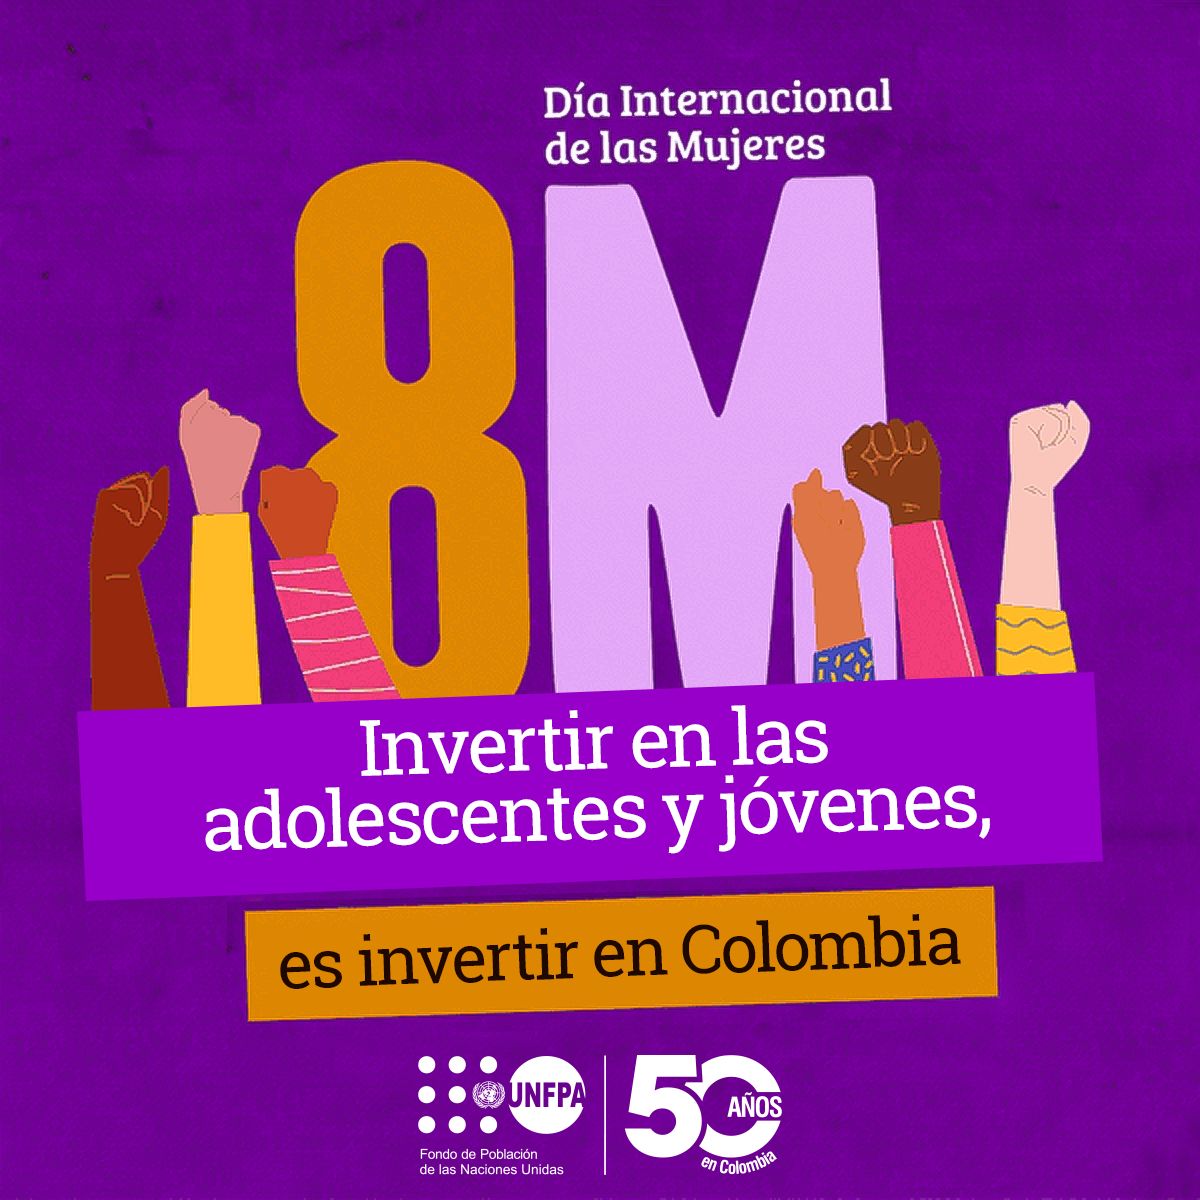 #8M ♀️ Las mujeres en Colombia 🇨🇴 y el mundo 🌎 impulsan el desarrollo y promueven el cambio social, por ello #InvertirEnMujeres debe estar en el centro de la búsqueda de soluciones a los retos de igualdad actuales.

Conoce nuestro pronunciamiento en el marco del…